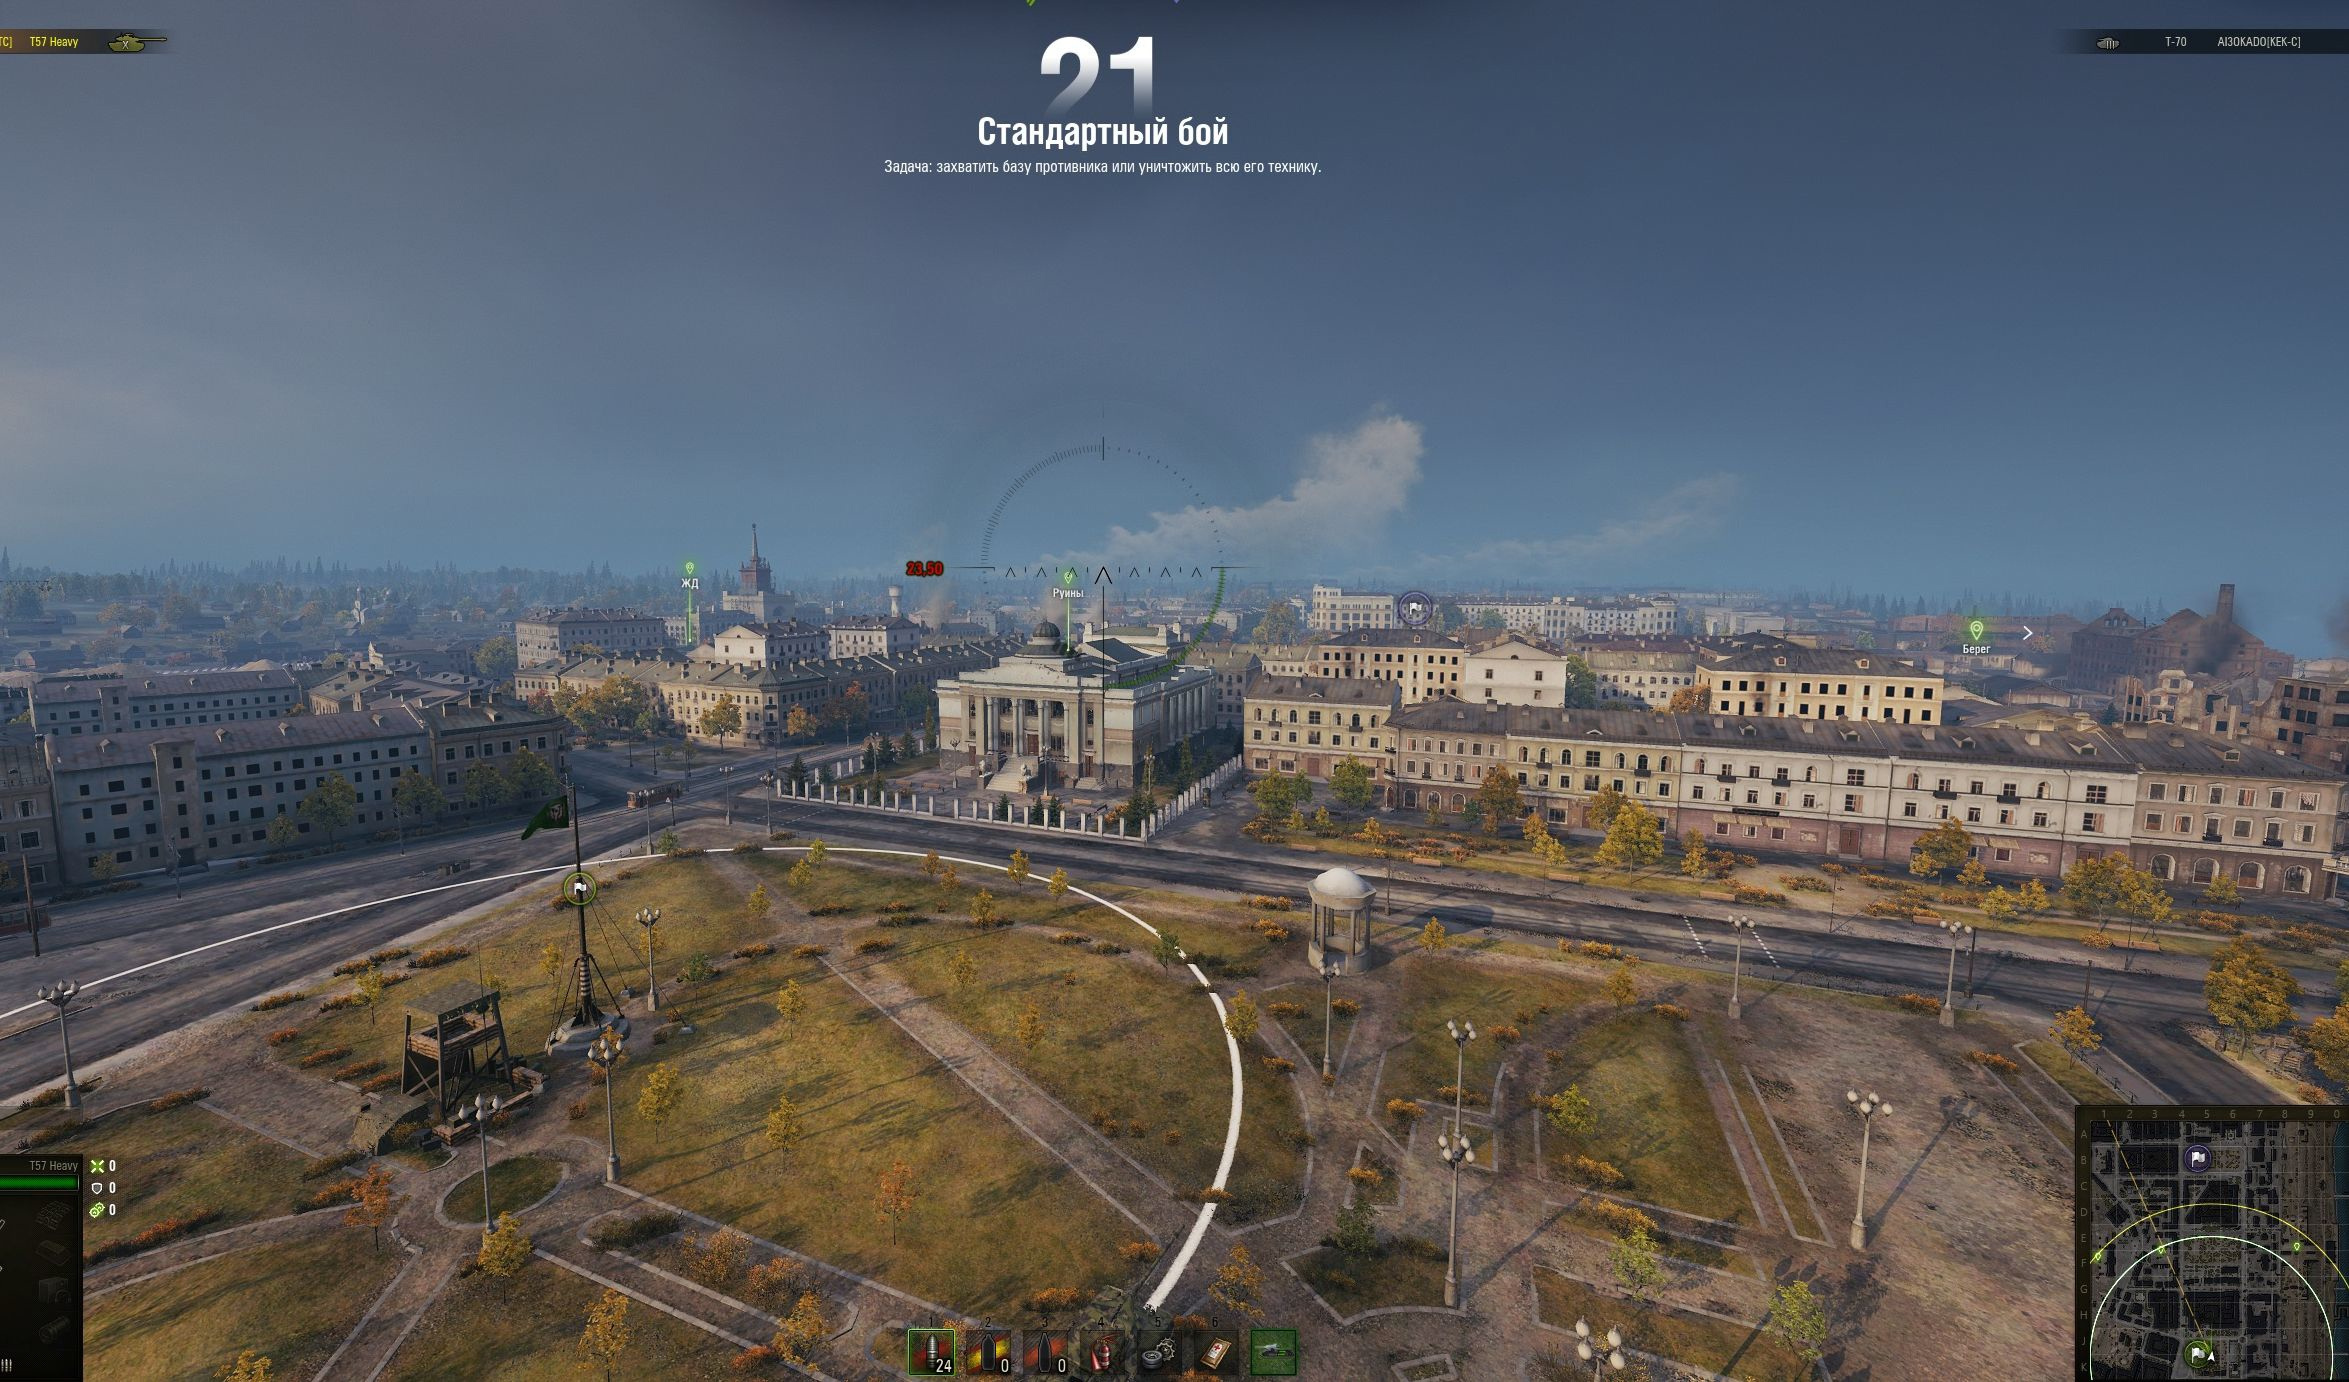 Сейчас на этом месте стоит Александро-Невский собор. А на карте игры будто уже вычерчен будущий фундамент...